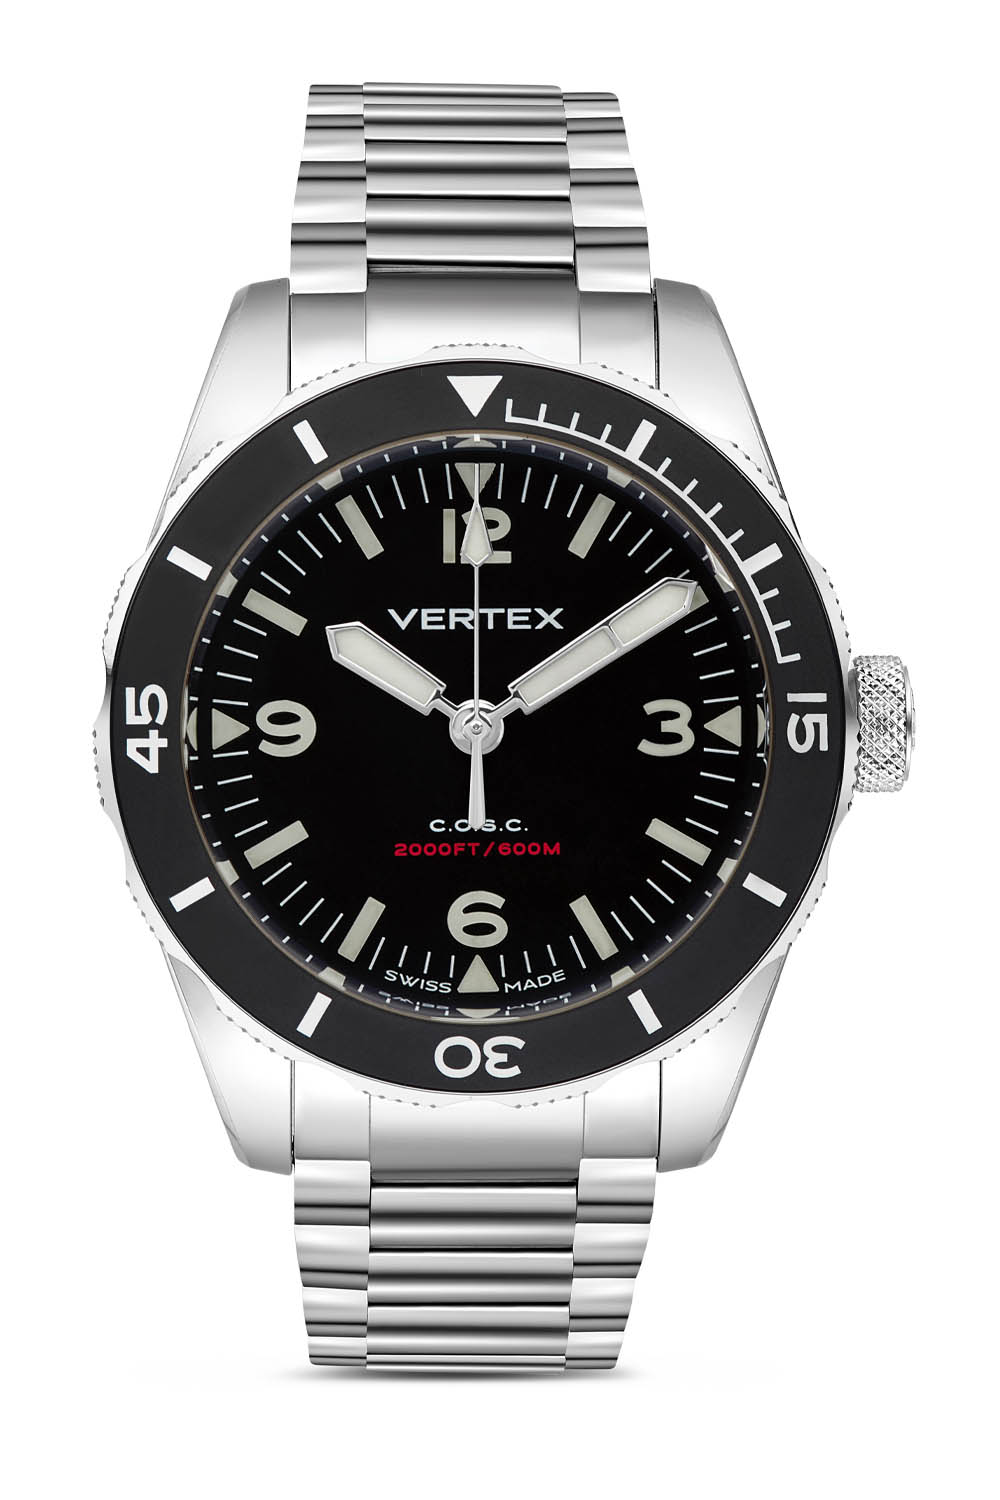 Vertex M60 AquaLion Dive Watch